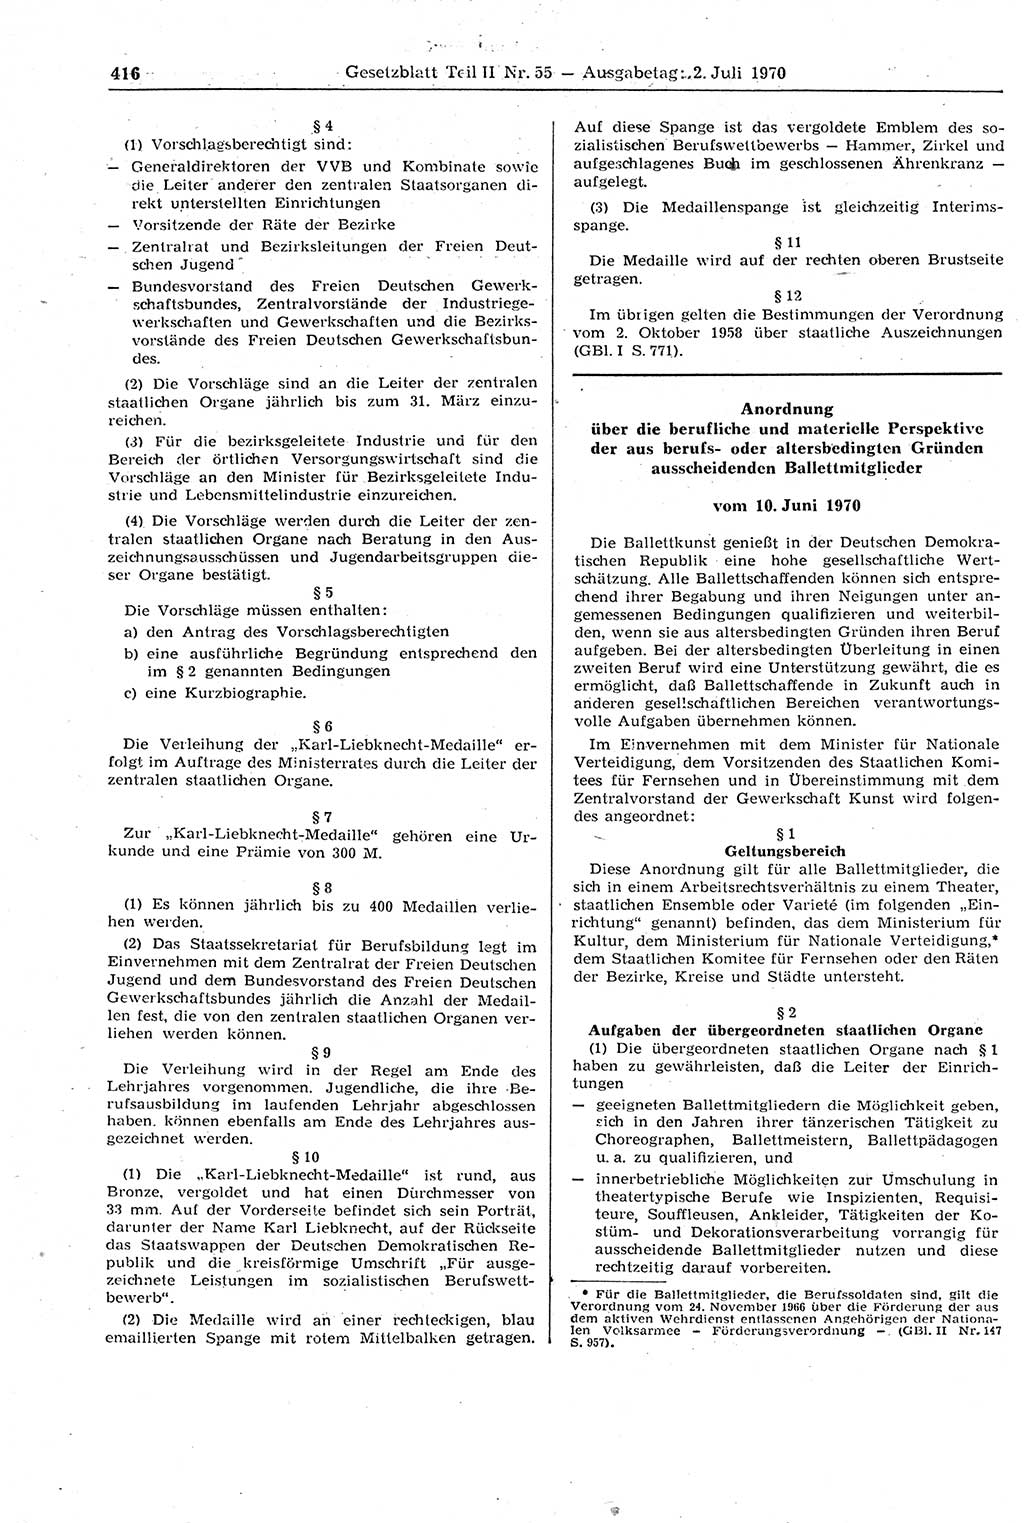 Gesetzblatt (GBl.) der Deutschen Demokratischen Republik (DDR) Teil ⅠⅠ 1970, Seite 416 (GBl. DDR ⅠⅠ 1970, S. 416)